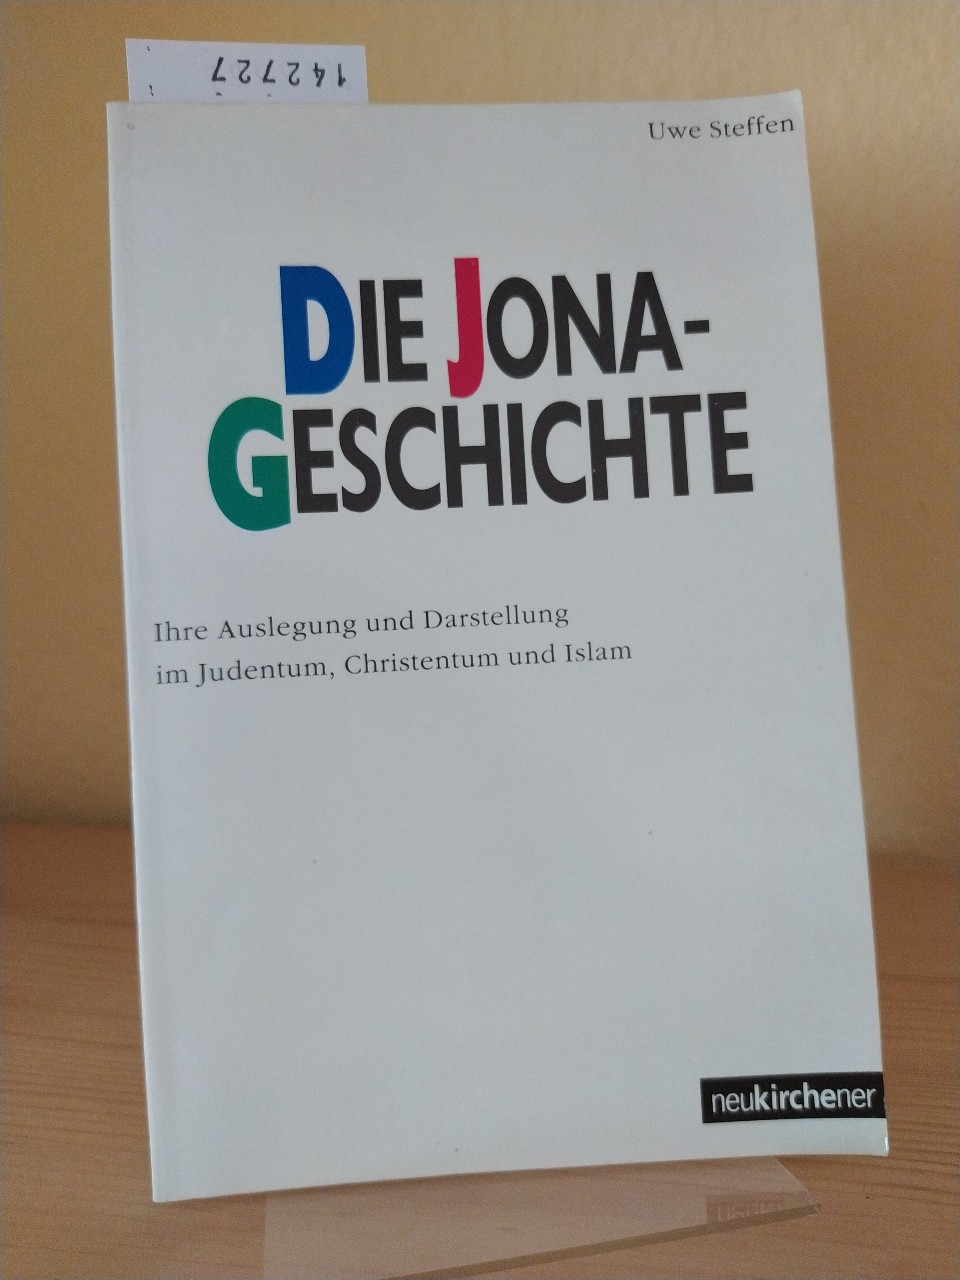 Die Jona-Geschichte: Ihre Auslegung und Darstellung im Judentum, Christentum und Islam (German Edition)